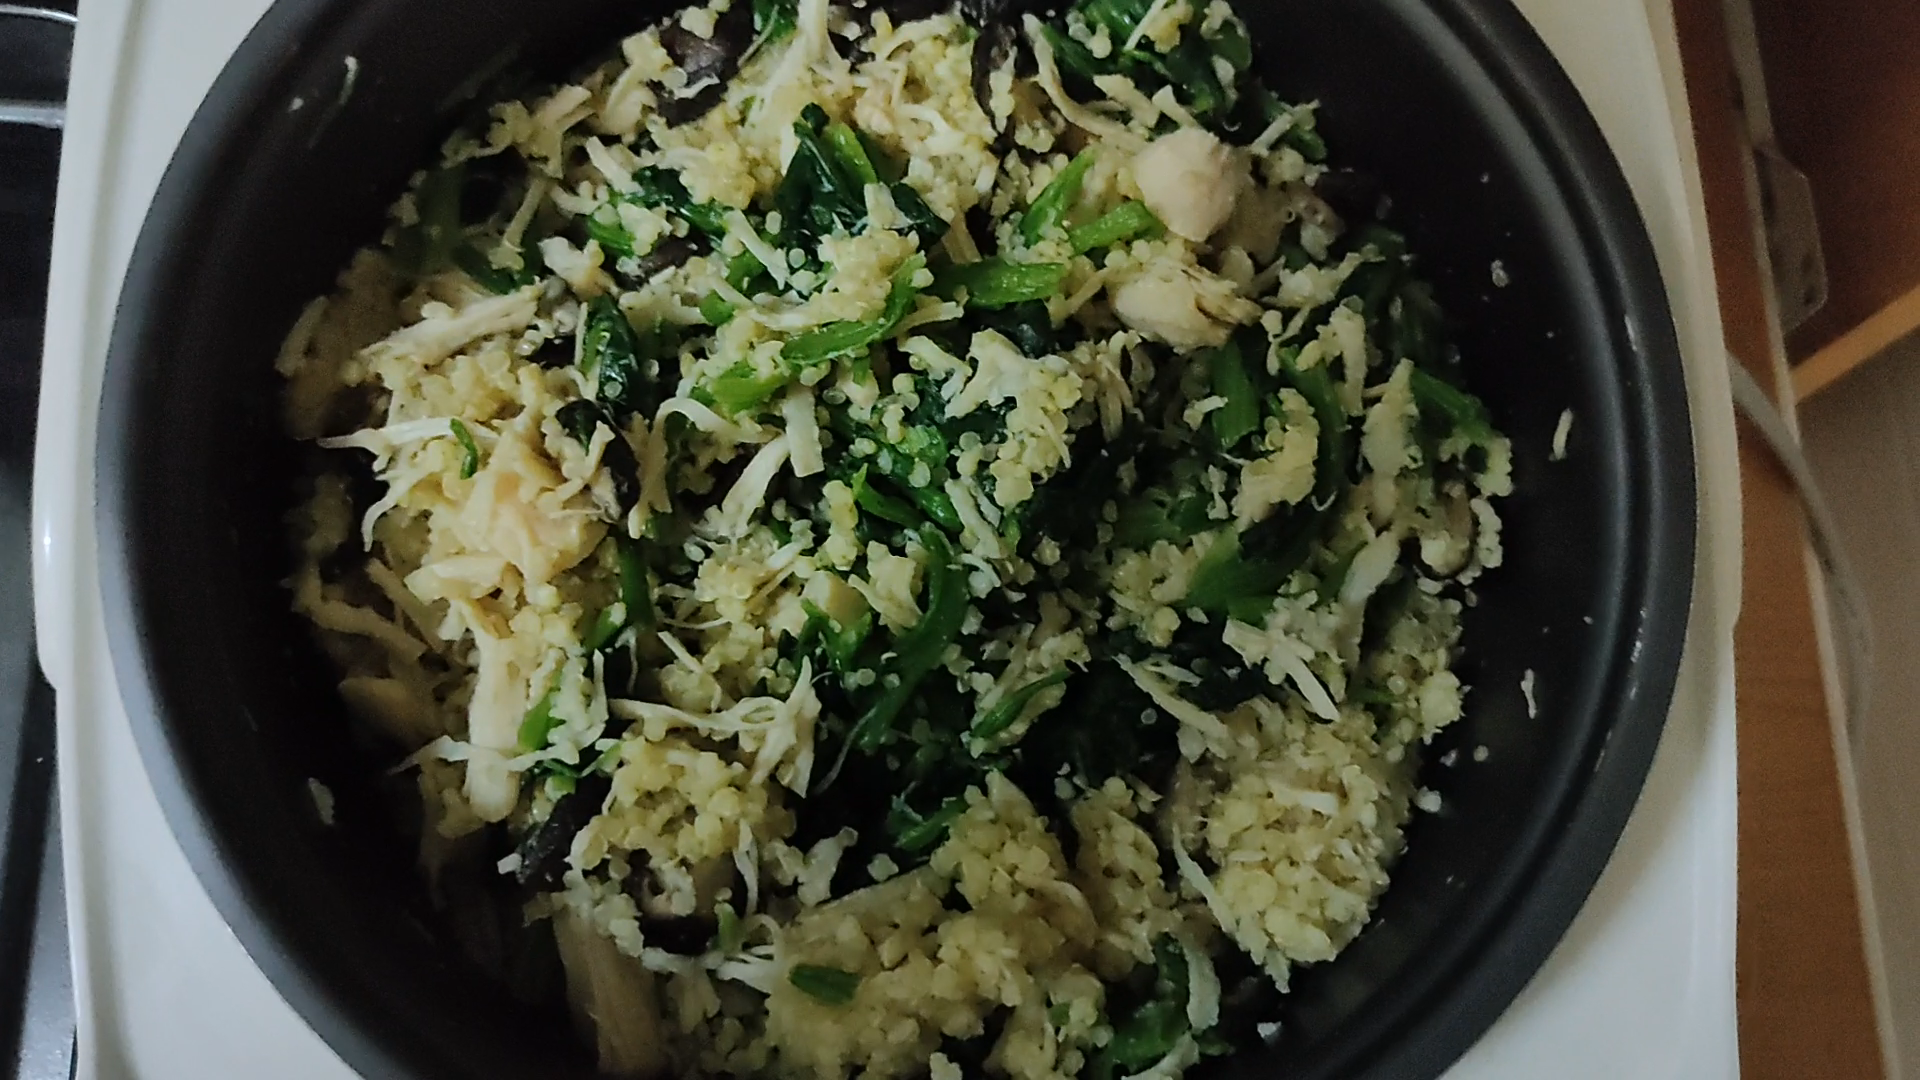 雞肉蔬菜燉飯(懶人電鍋料理)